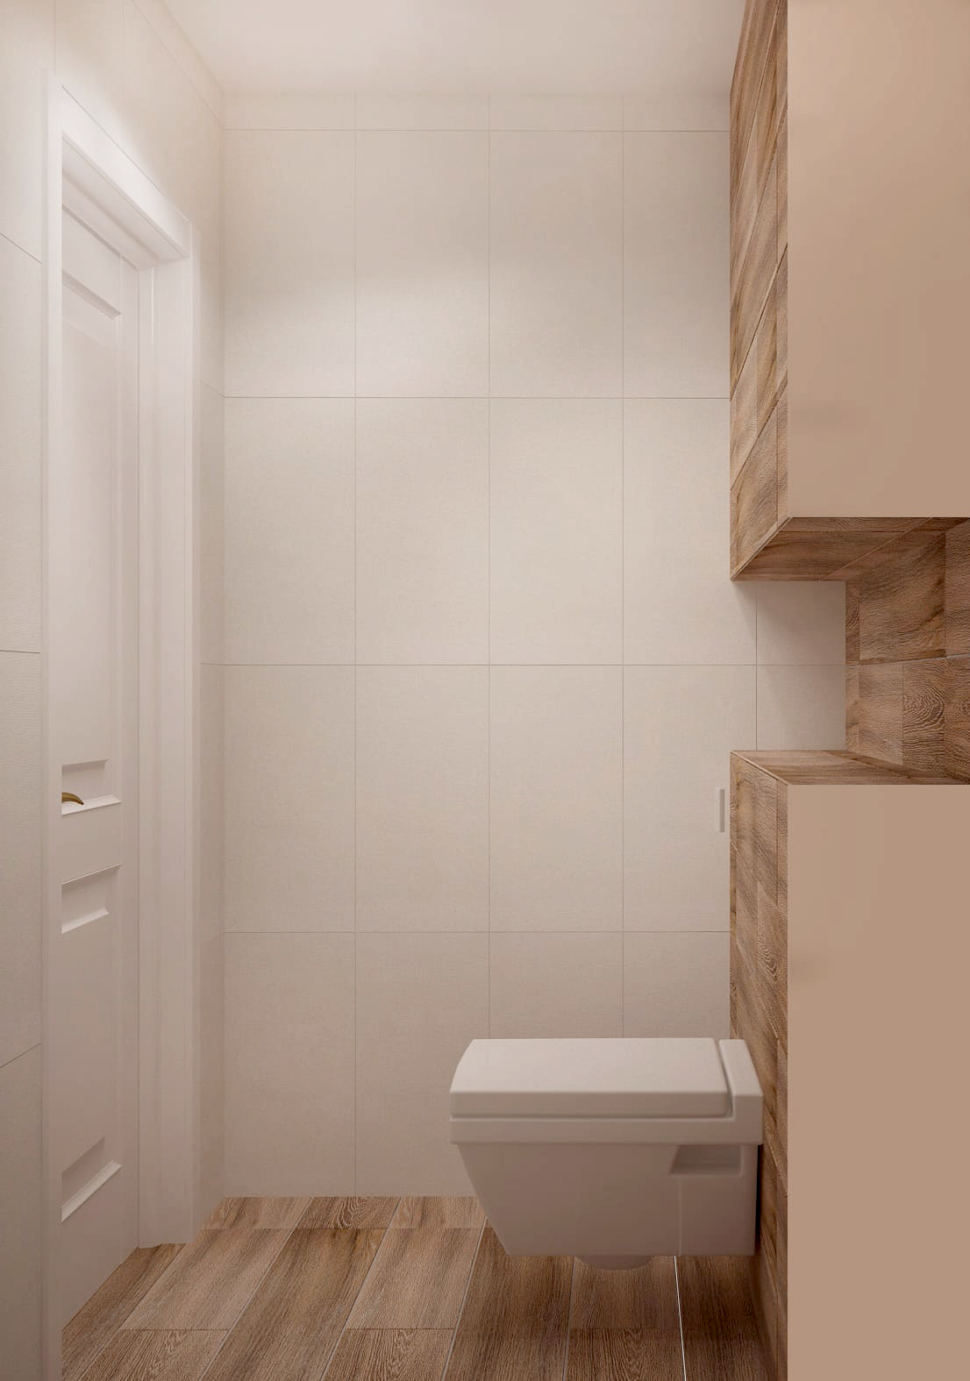 Визуализация санузла 2 кв.м в древесных и белых оттенках, туалет, плитка, светильник